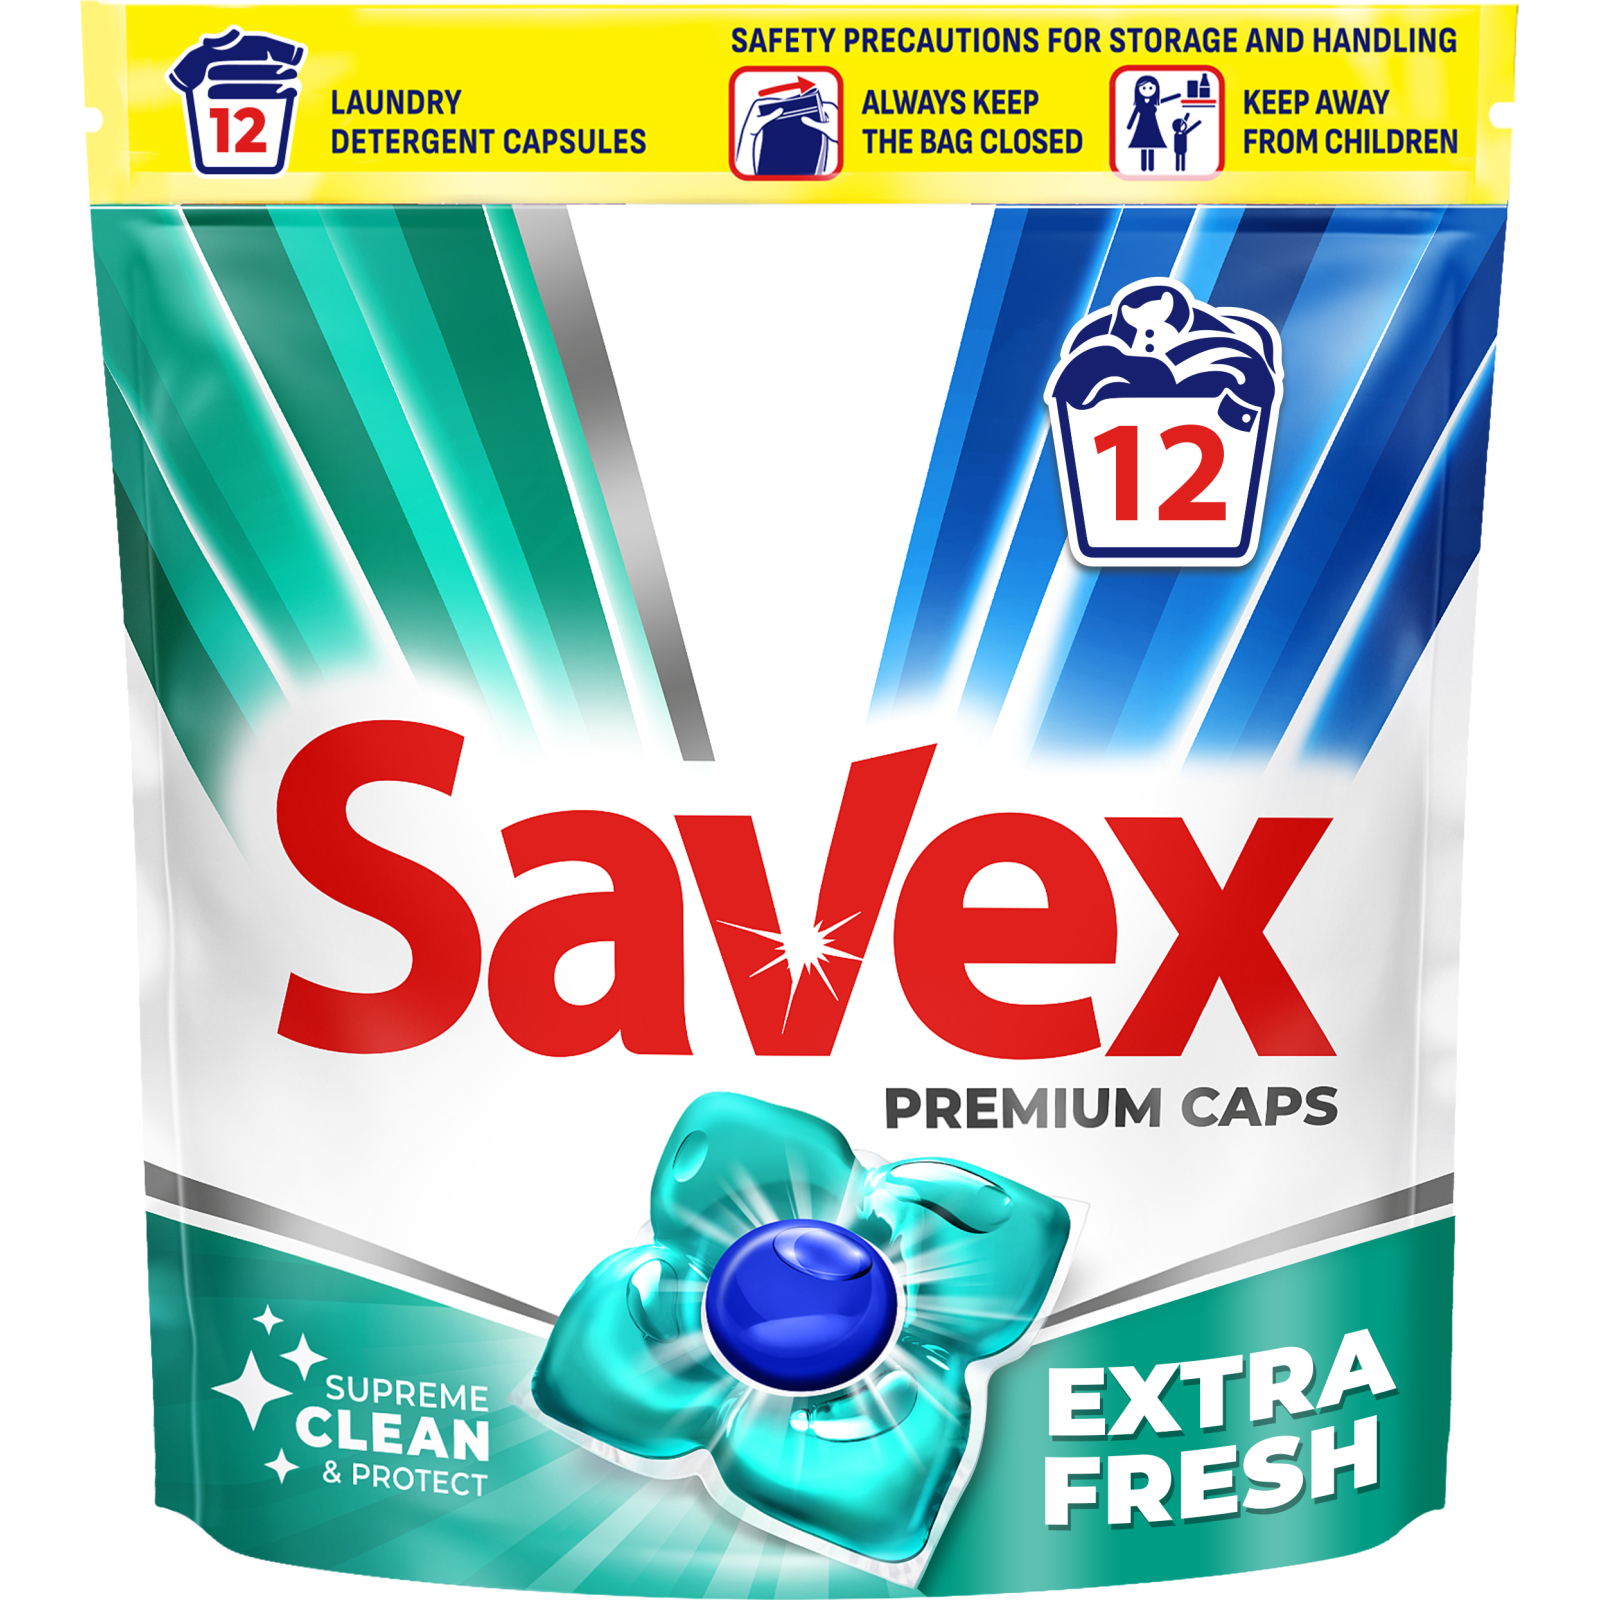 Капсулы для стирки Savex Super Caps Extra Fresh 12 шт. (3800024046834)